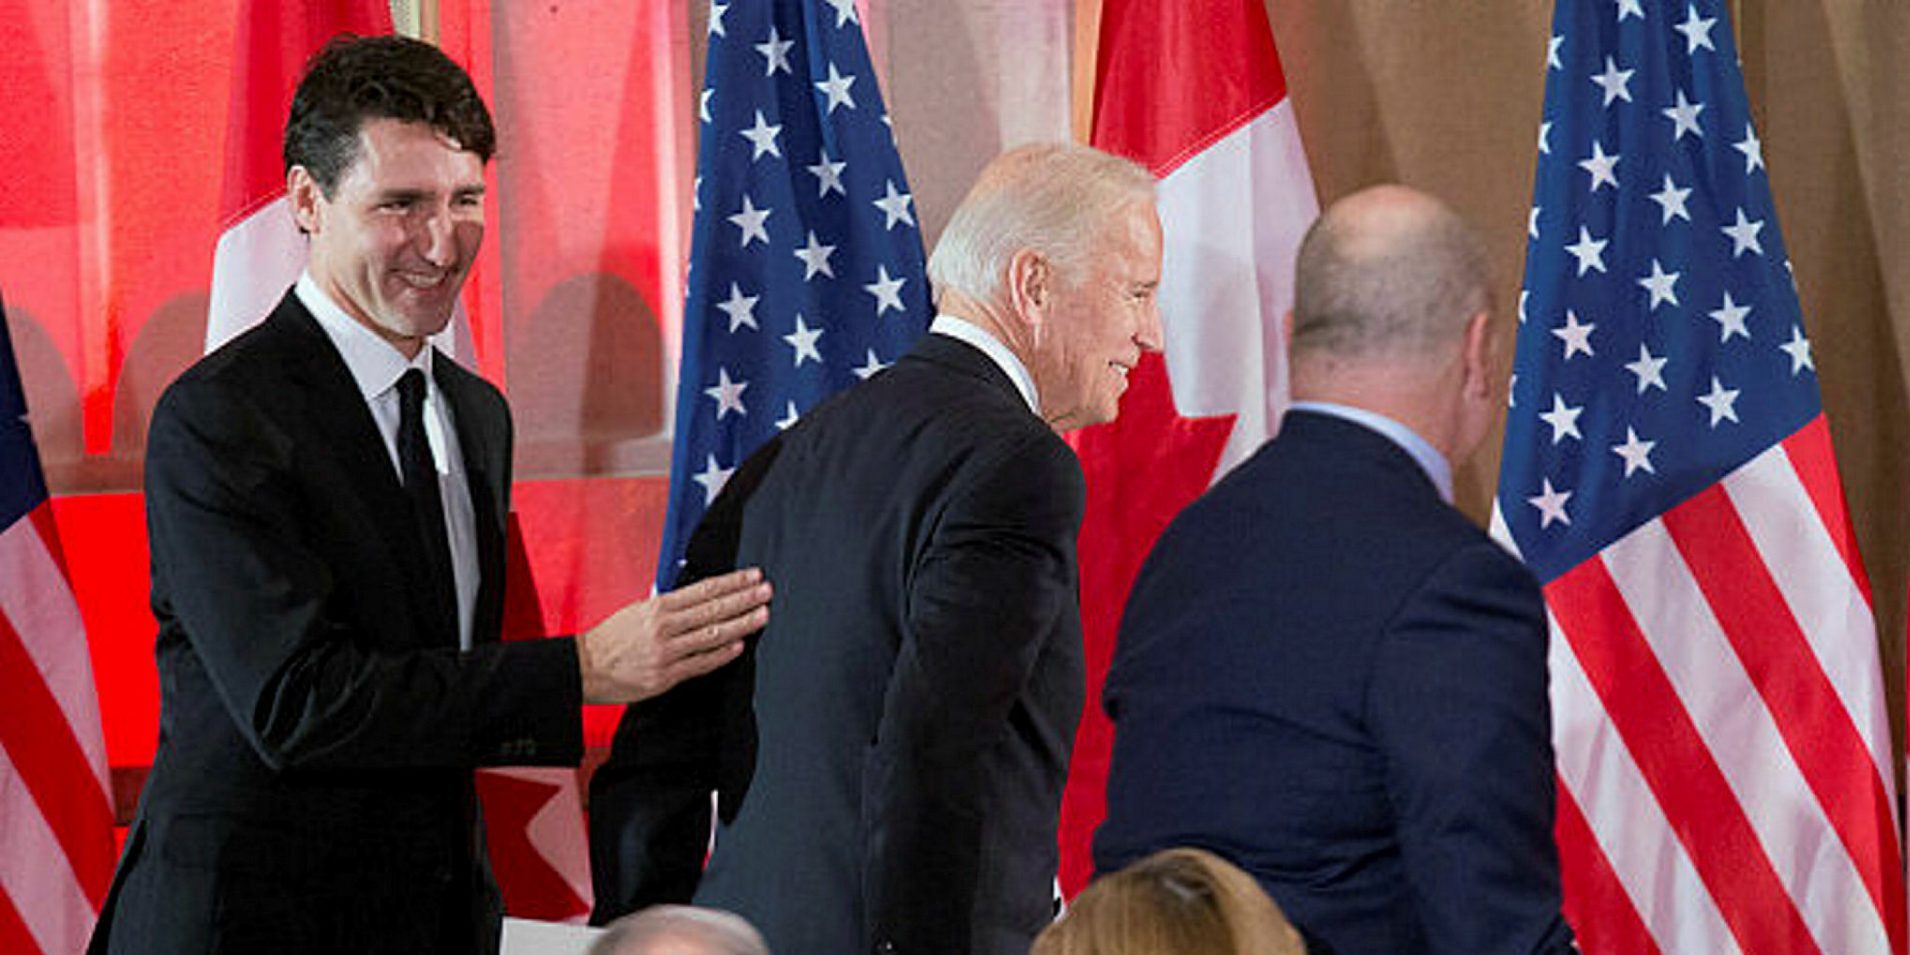 Joe Biden Trudeau visit 230877.t584ac4c7.m600.xMJ5yu_uI.t63c09b21.m2048.xPfb5f3z-